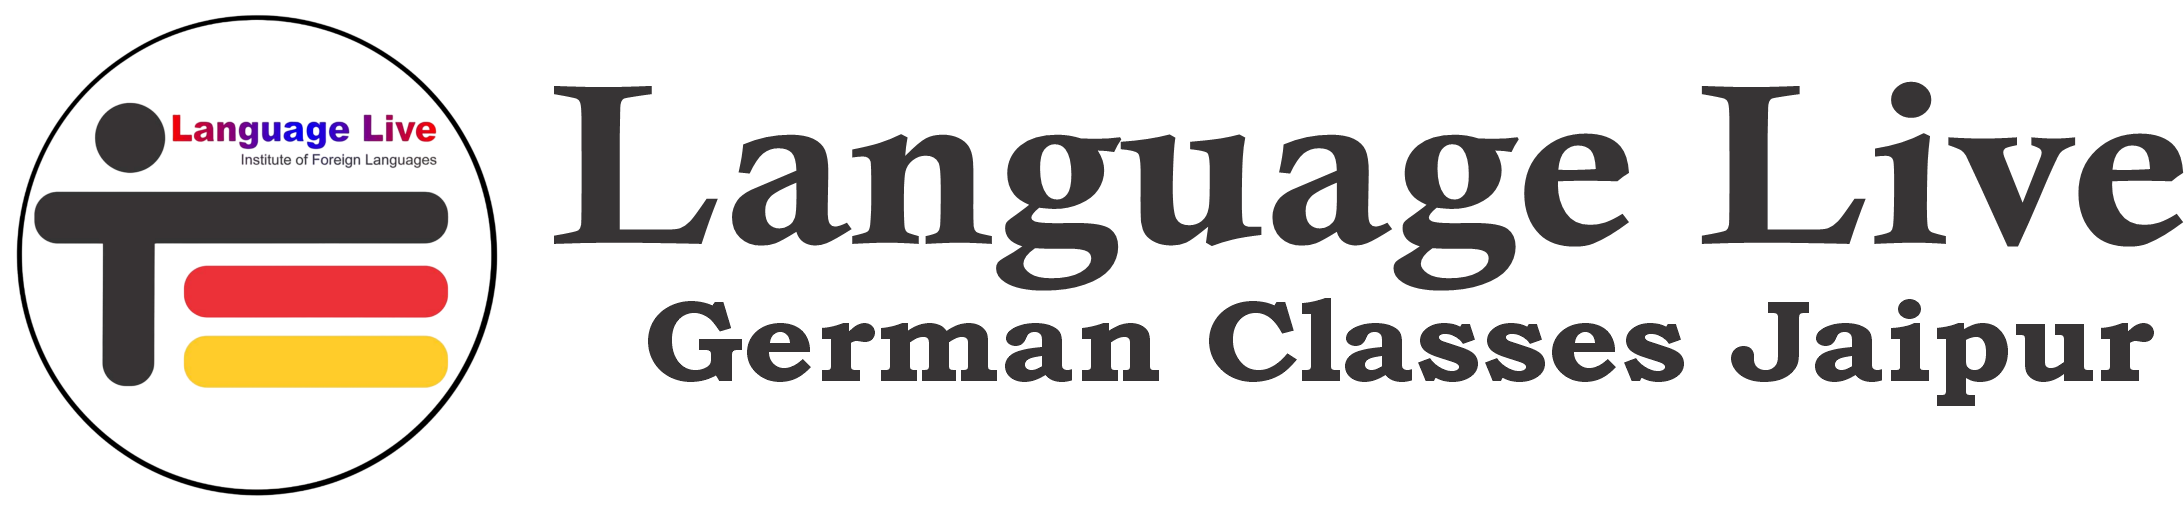 German Language Institute in Jaipur | Call: 8290093434 German Classes Jaipur | Learn German Online / Offline in Jaipur, Rajasthan | Language Live , Jaipur